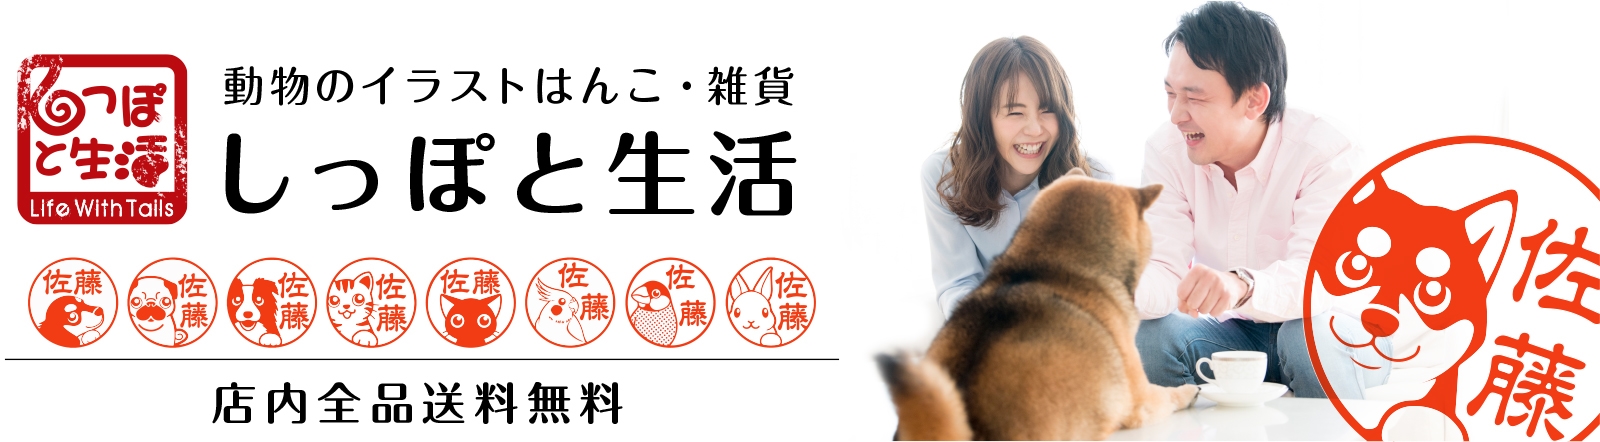 犬、猫、鳥などかわいい動物イラストのハンコ・グッズ・雑貨通販【しっぽと生活】